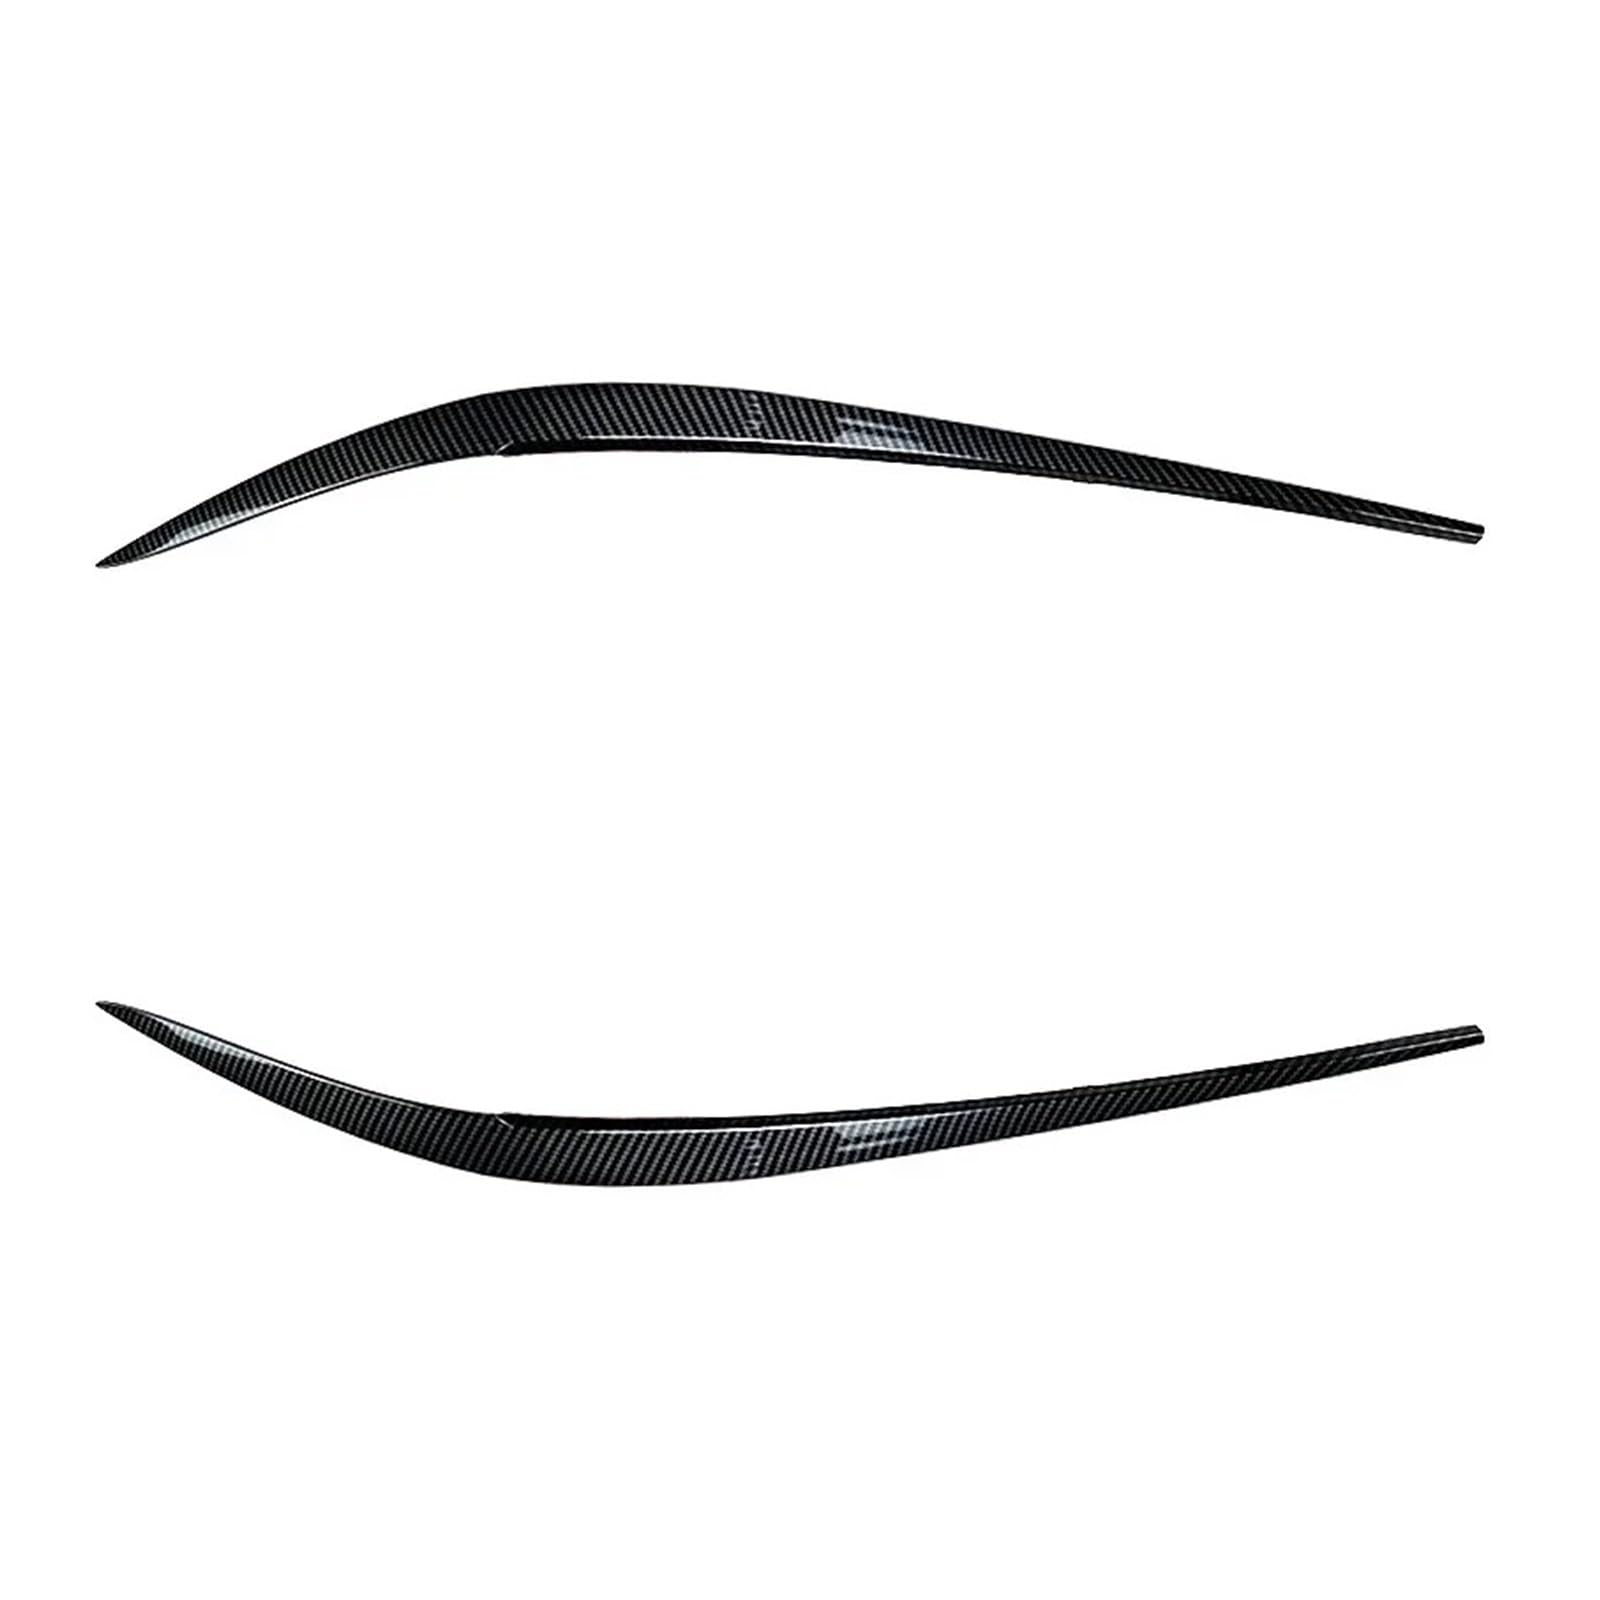 AIJIAMAN Auto-Frontscheinwerfer-Augenbrauen-Augenlider-Aufkleber, passend for BMW 3er G20 320i 325i 330i 2019+, glänzend schwarz, Carbon-Look, Body Kit Tuning Automobil-Augenlider(Carbon Look) von AIJIAMAN